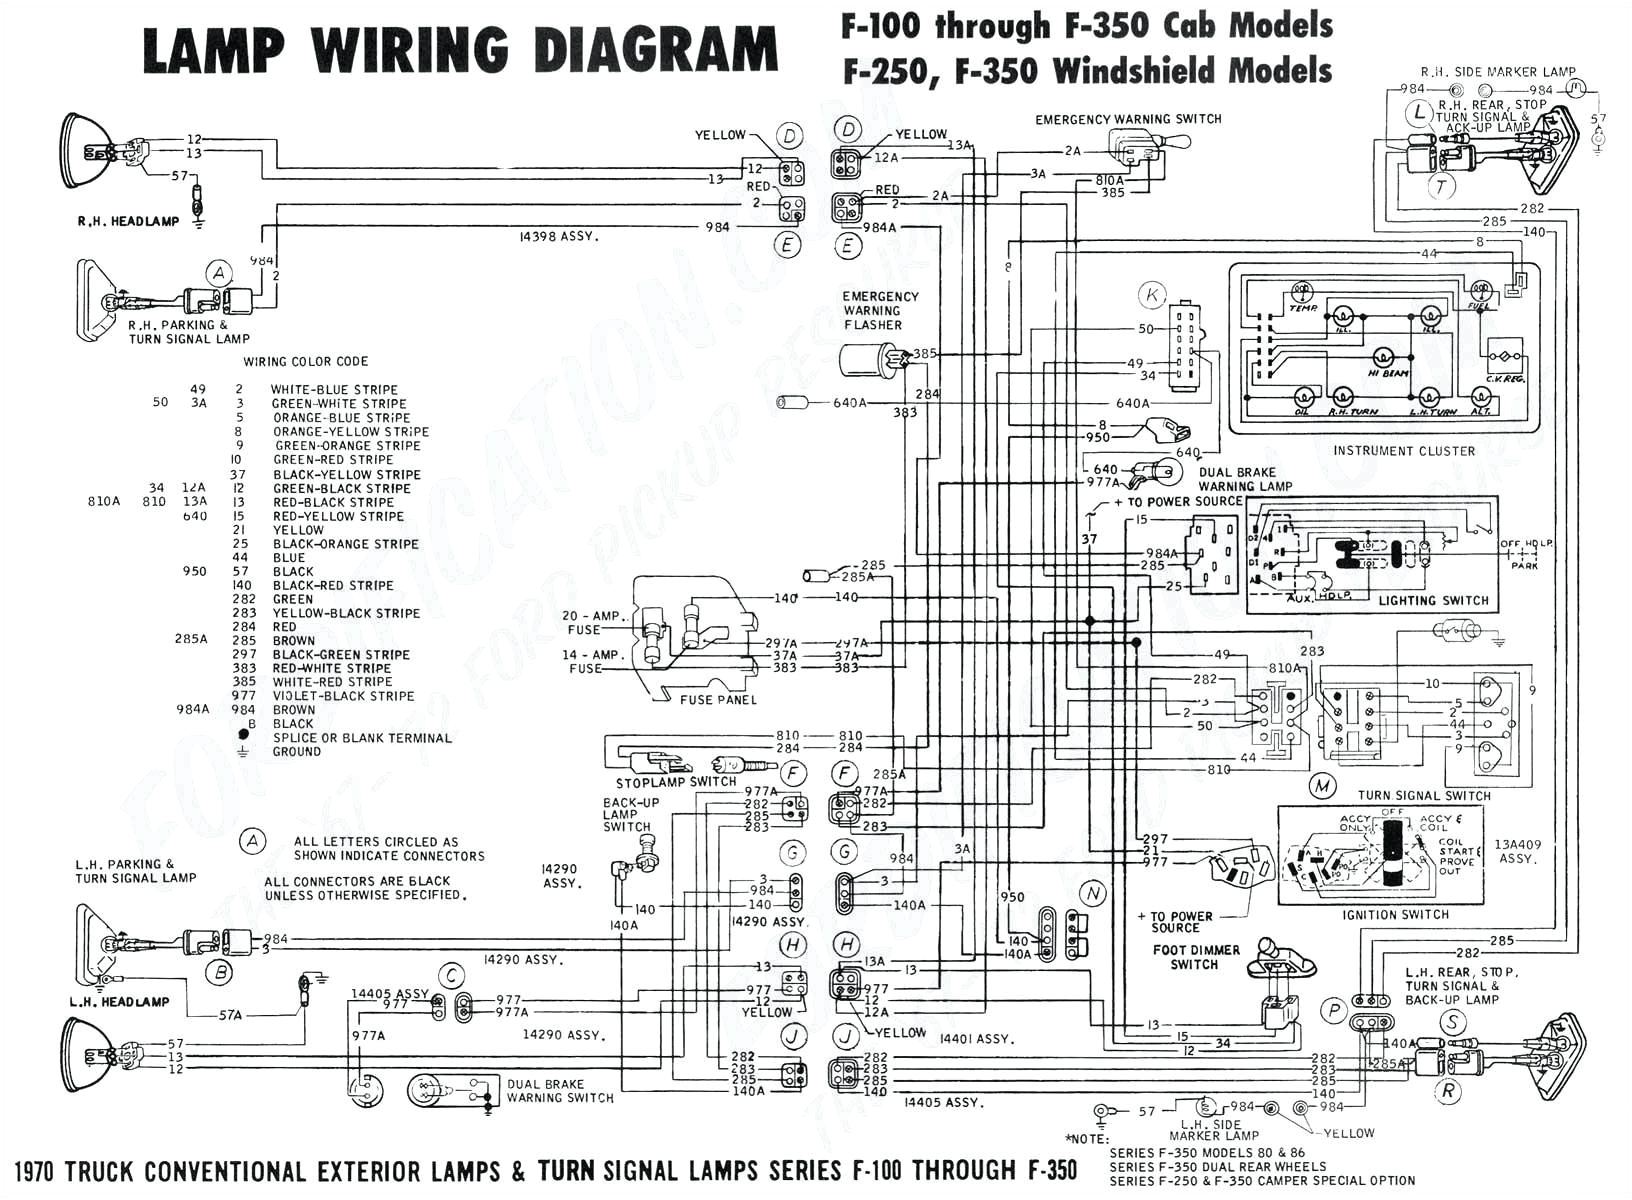 2002 ducati 900 wiring diagram wiring diagram load